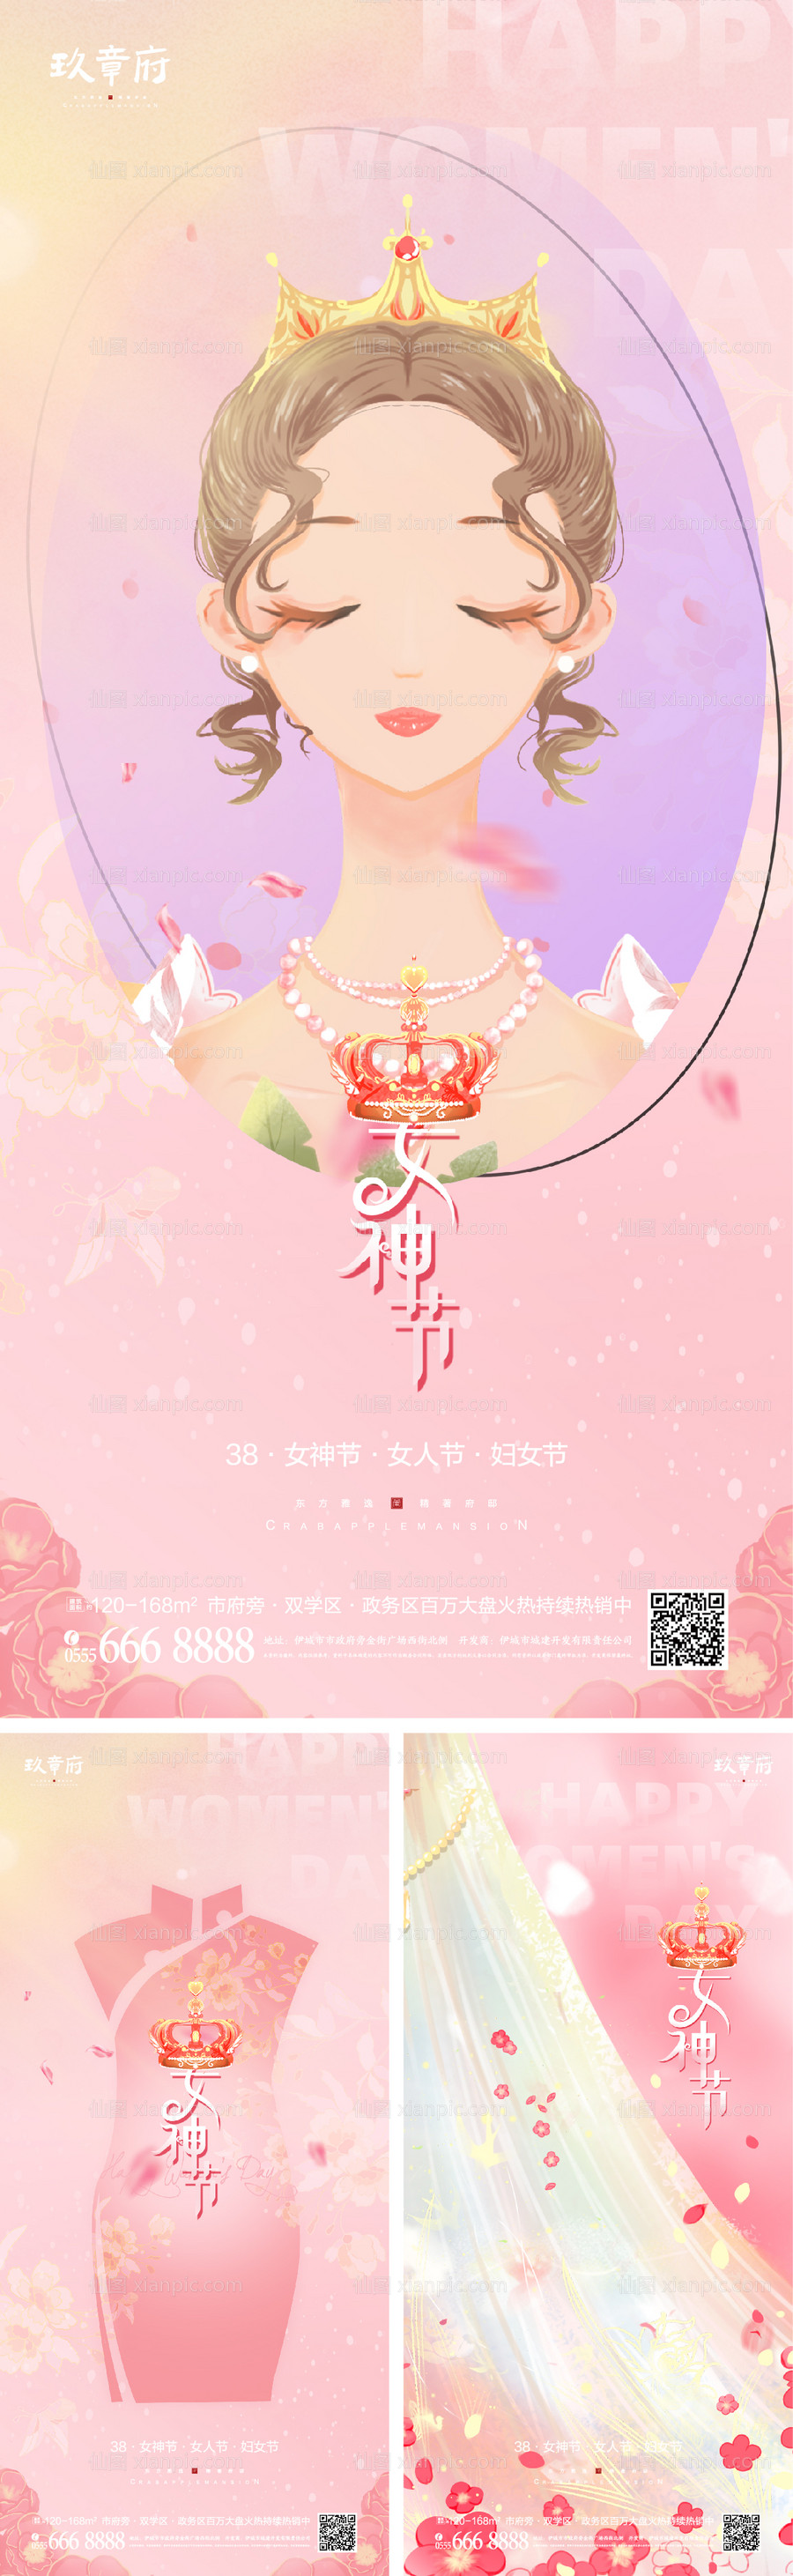 素材乐-女神节节日海报